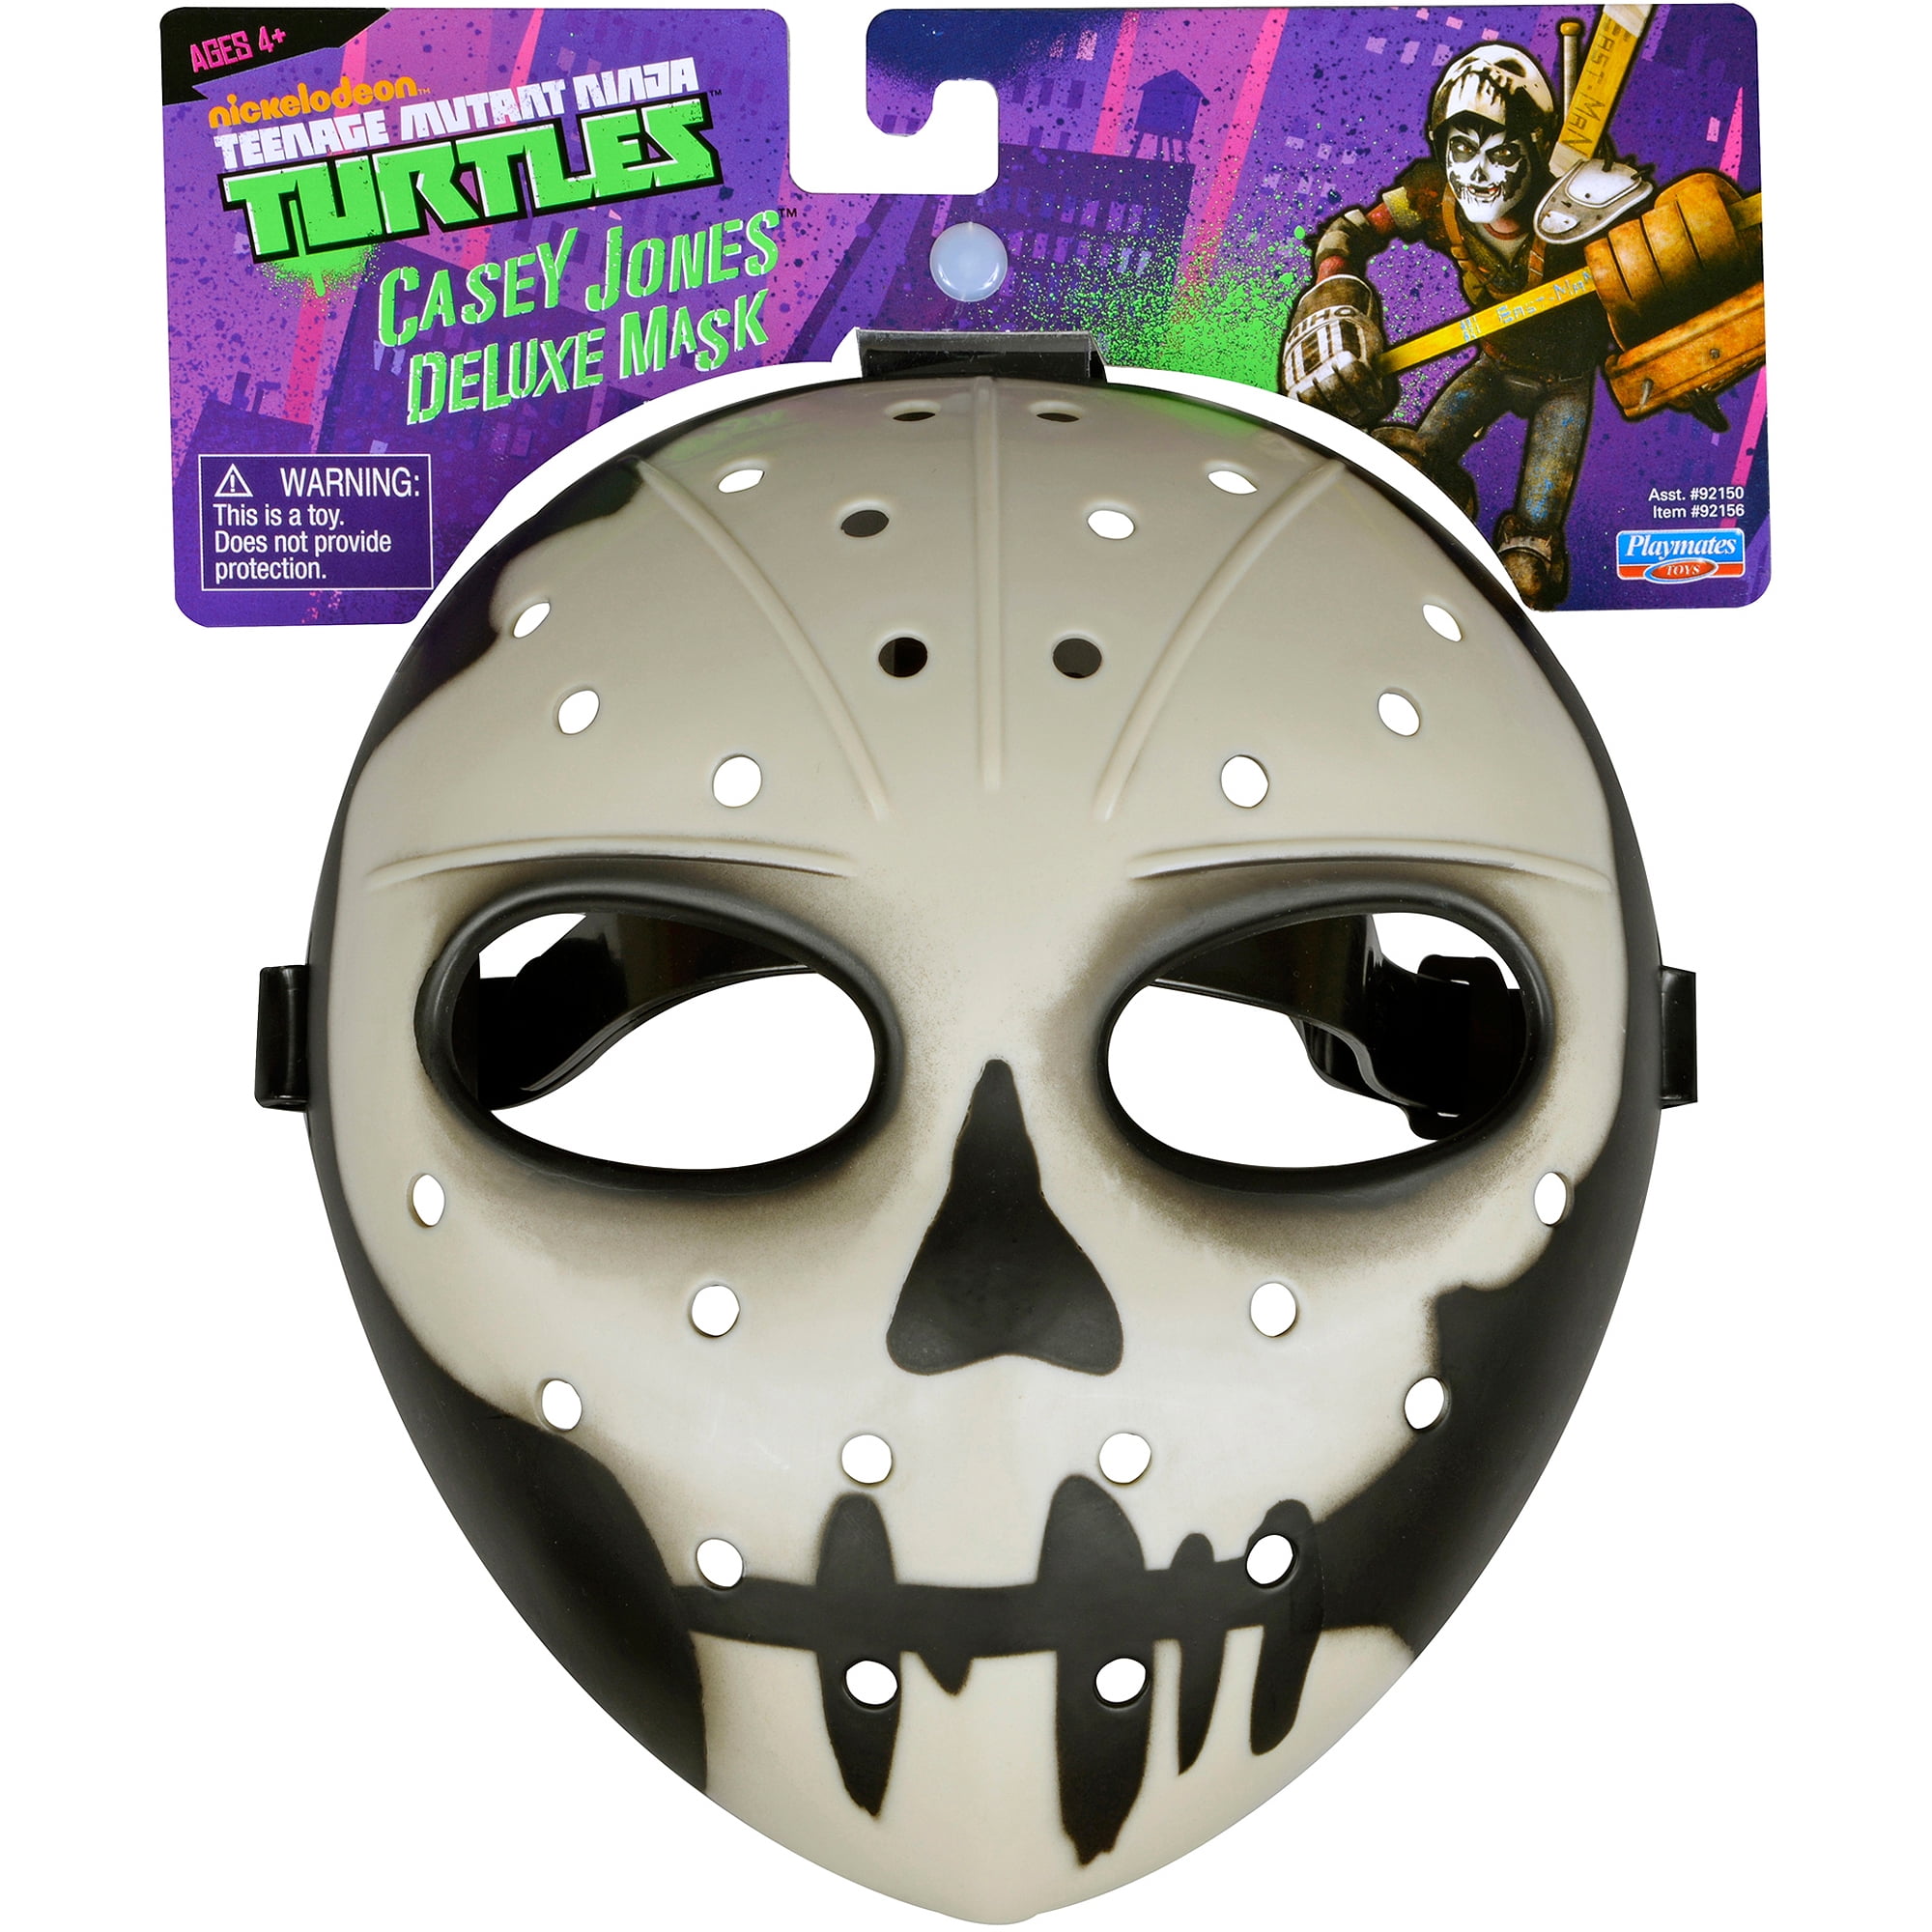 Nouveau Teenage Mutant Ninja Turtles Casey Jones Deluxe Mask TMNT Officiel 